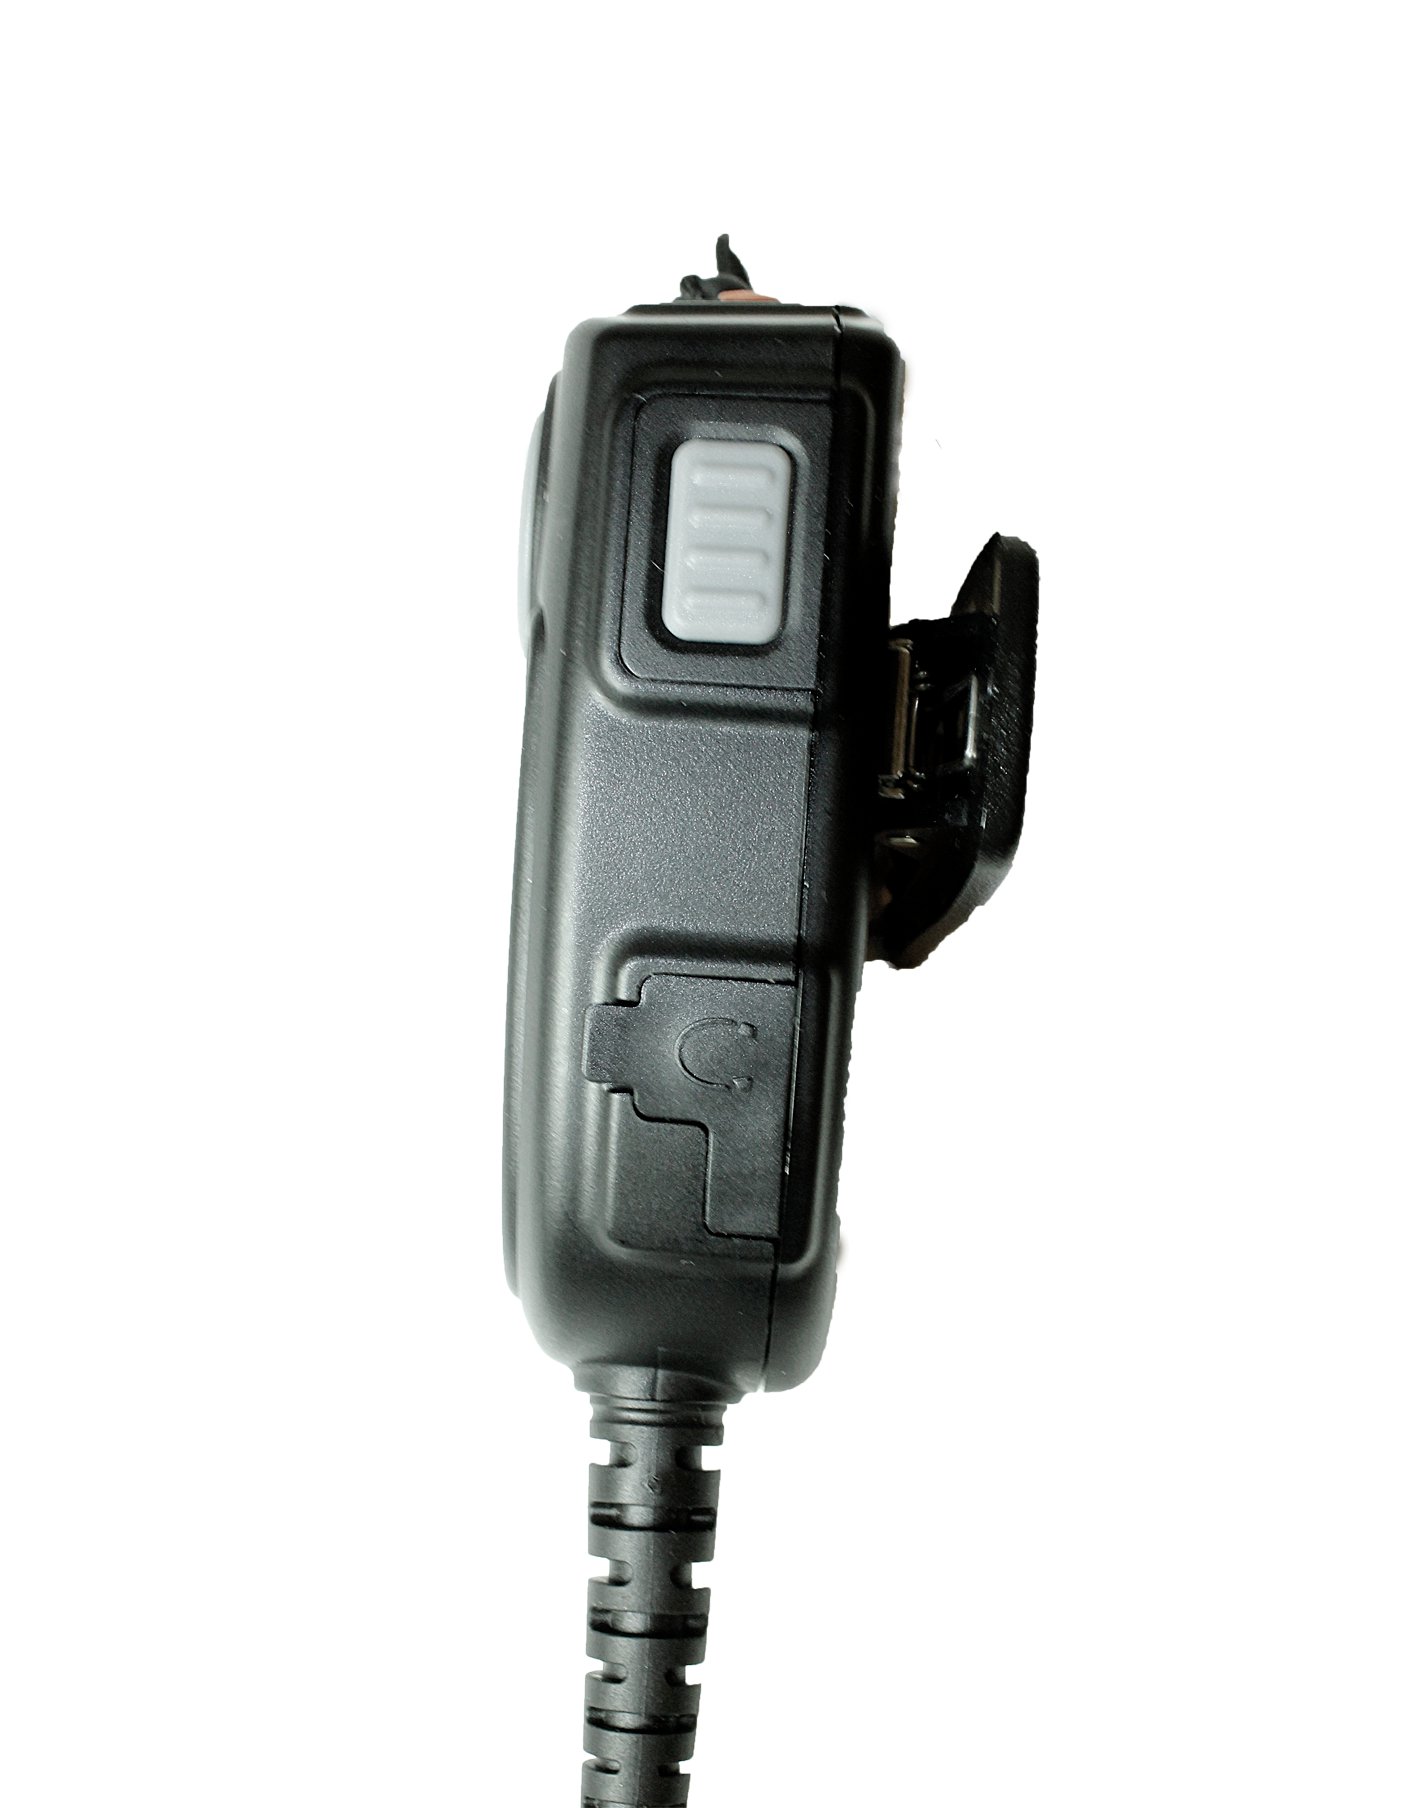 TITAN Lautsprechermikrofon MMW20 mit Nexus 02 und PTT-Modul passend für Sepura SRH3800 SRH3900